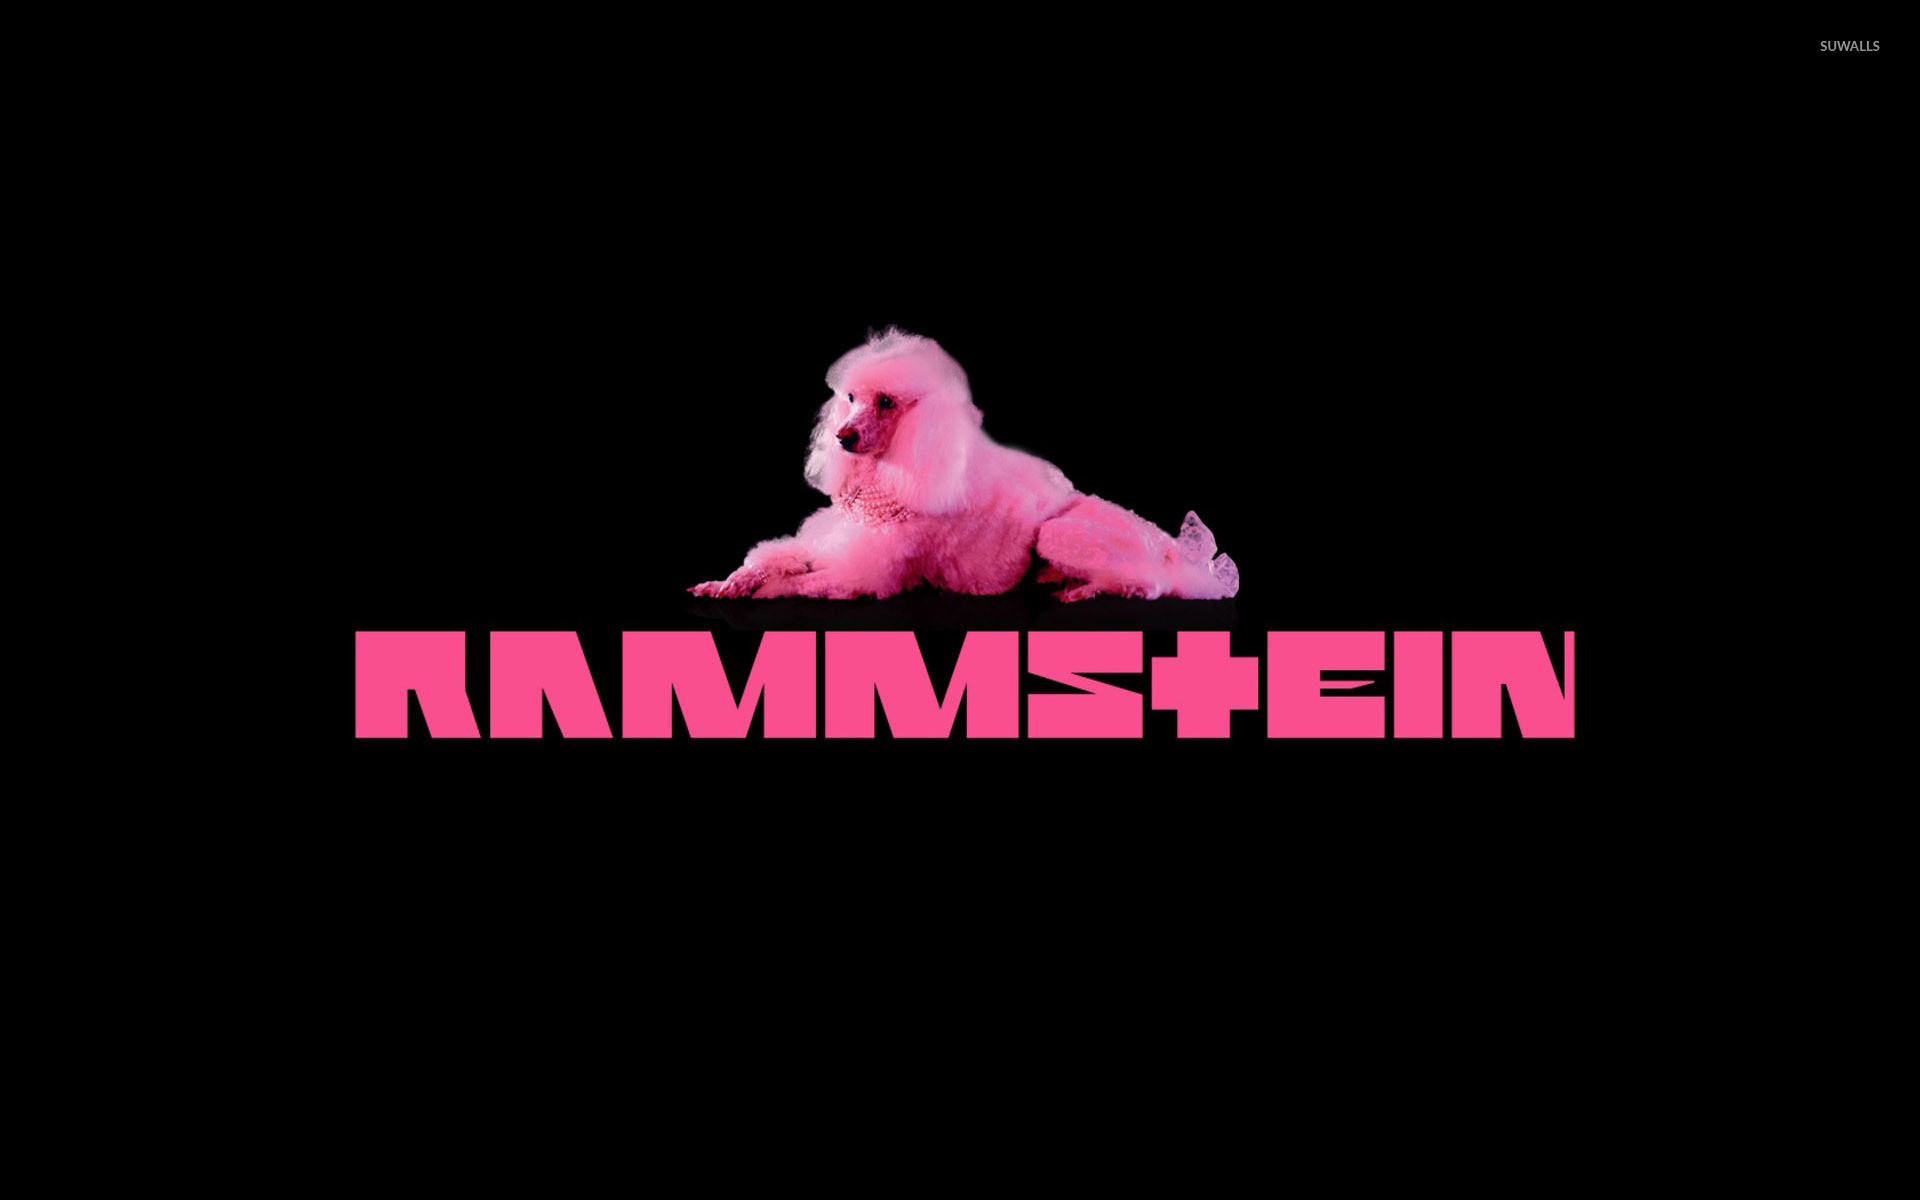 Rammstein.wallpaper - Imgur